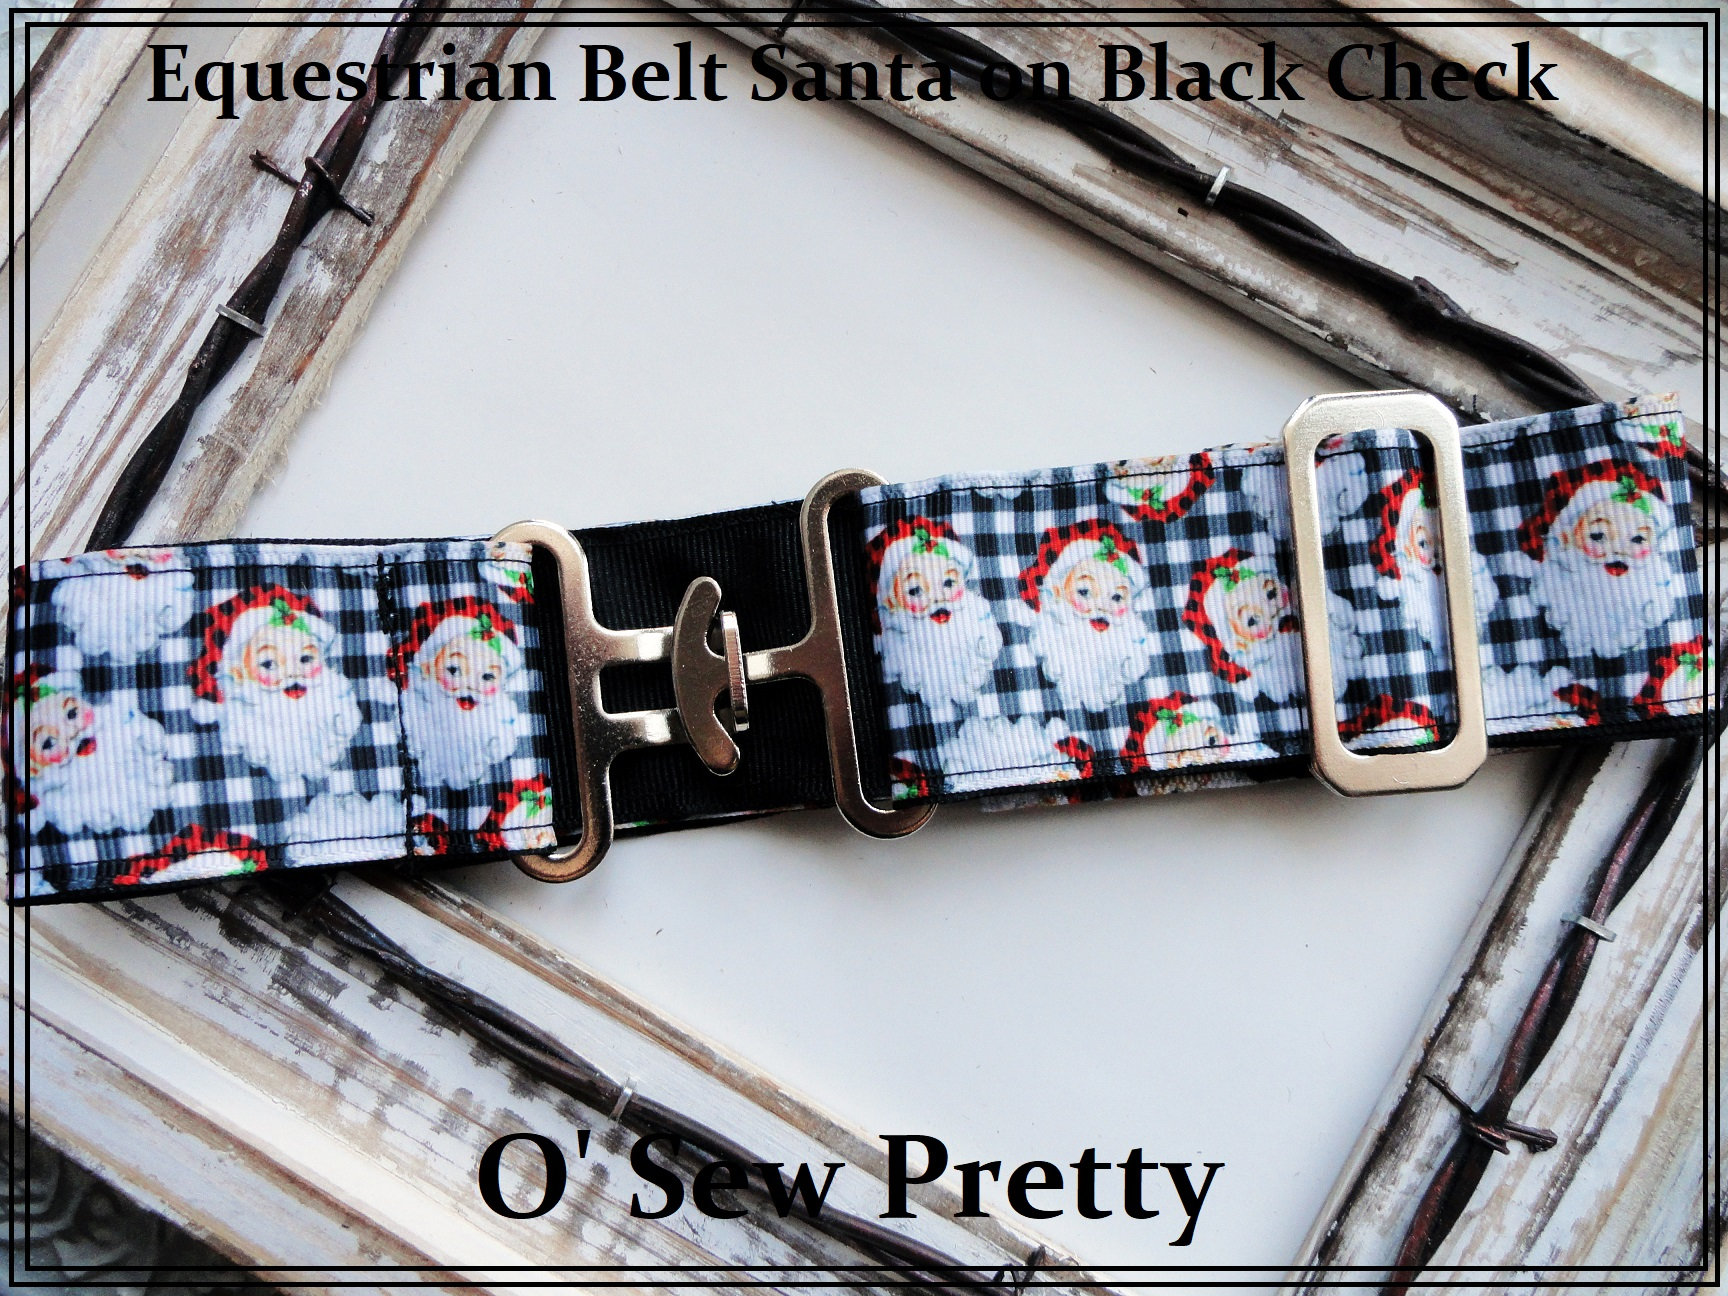 Equestrian Belt REINDEER childs Horse show belts Adjustable Equestrian Surcingle Belt Fancy holiday belts Equestrian Gifts